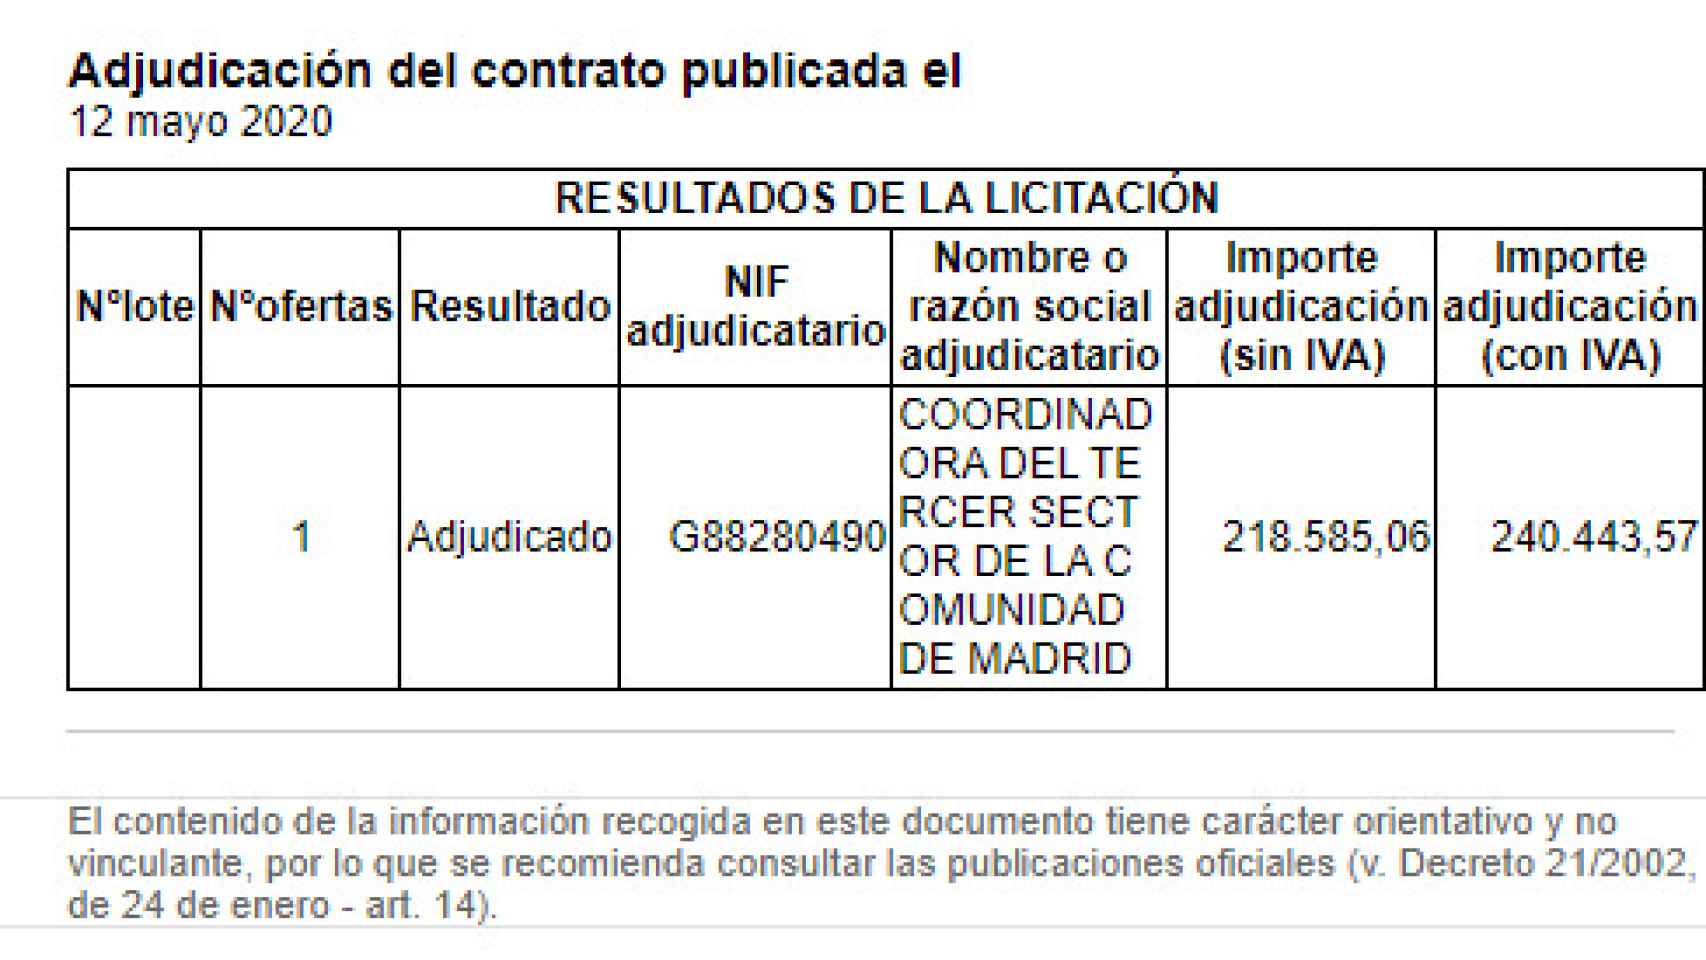 Captura de la adjudicación publicada en el Portal de Contratación de la Comunidad de Madrid.